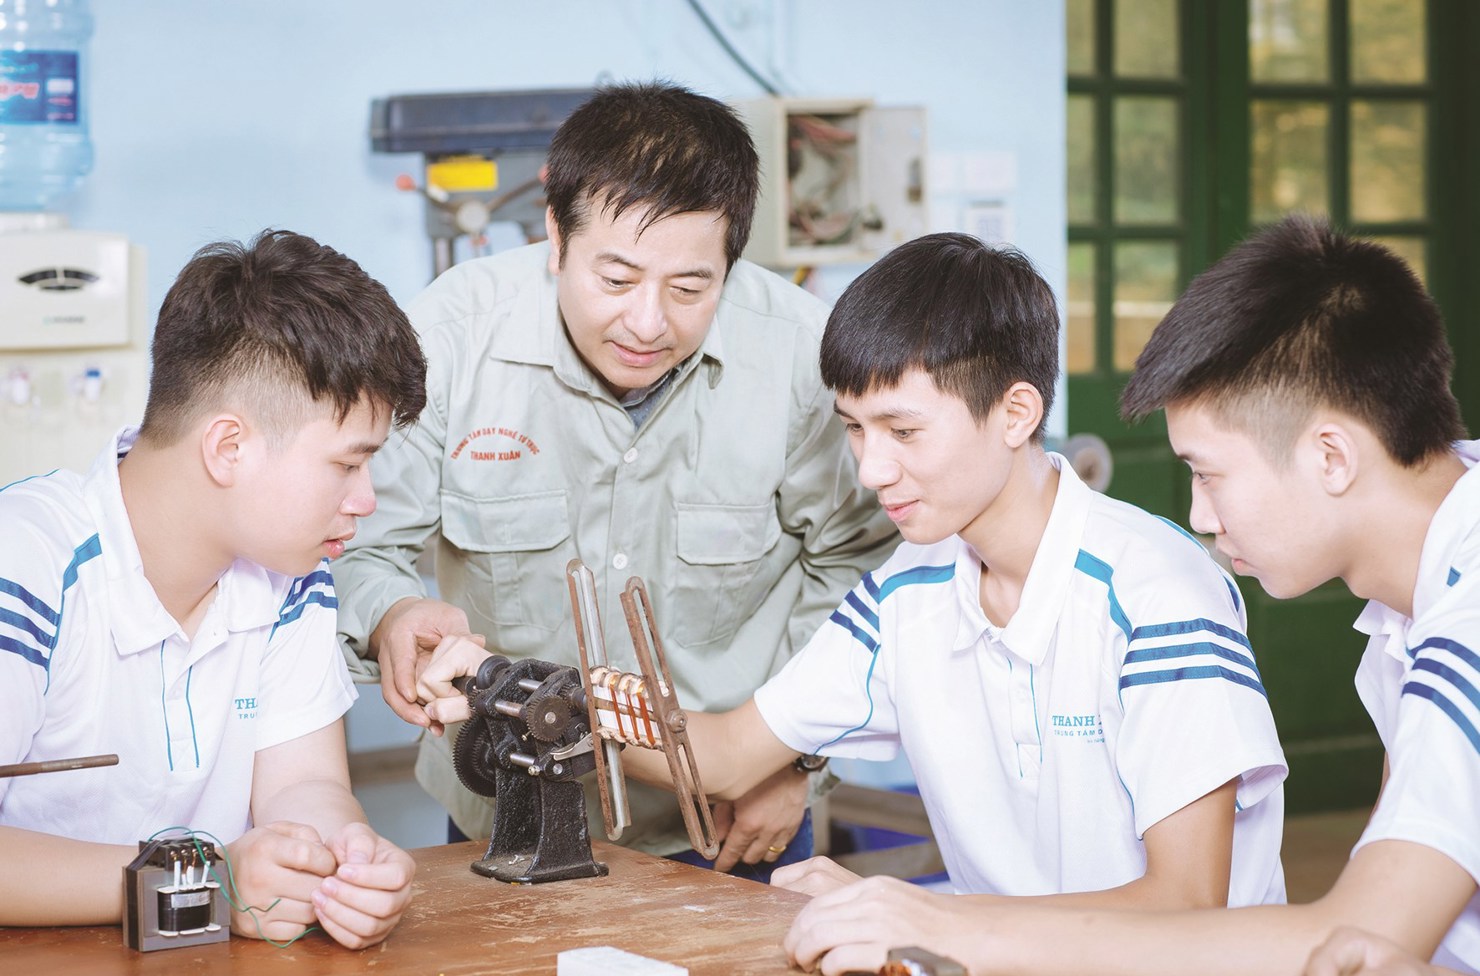 Quy hoạch mạng lưới cơ sở giáo dục nghề nghiệp là một bước tiến đáng khen ngợi của giáo dục Việt Nam. Hãy xem những hình ảnh minh họa về kế hoạch quy hoạch này và cảm nhận sự tươi mới và cơ hội phát triển trong tương lai của các chương trình đào tạo nghề nghiệp.